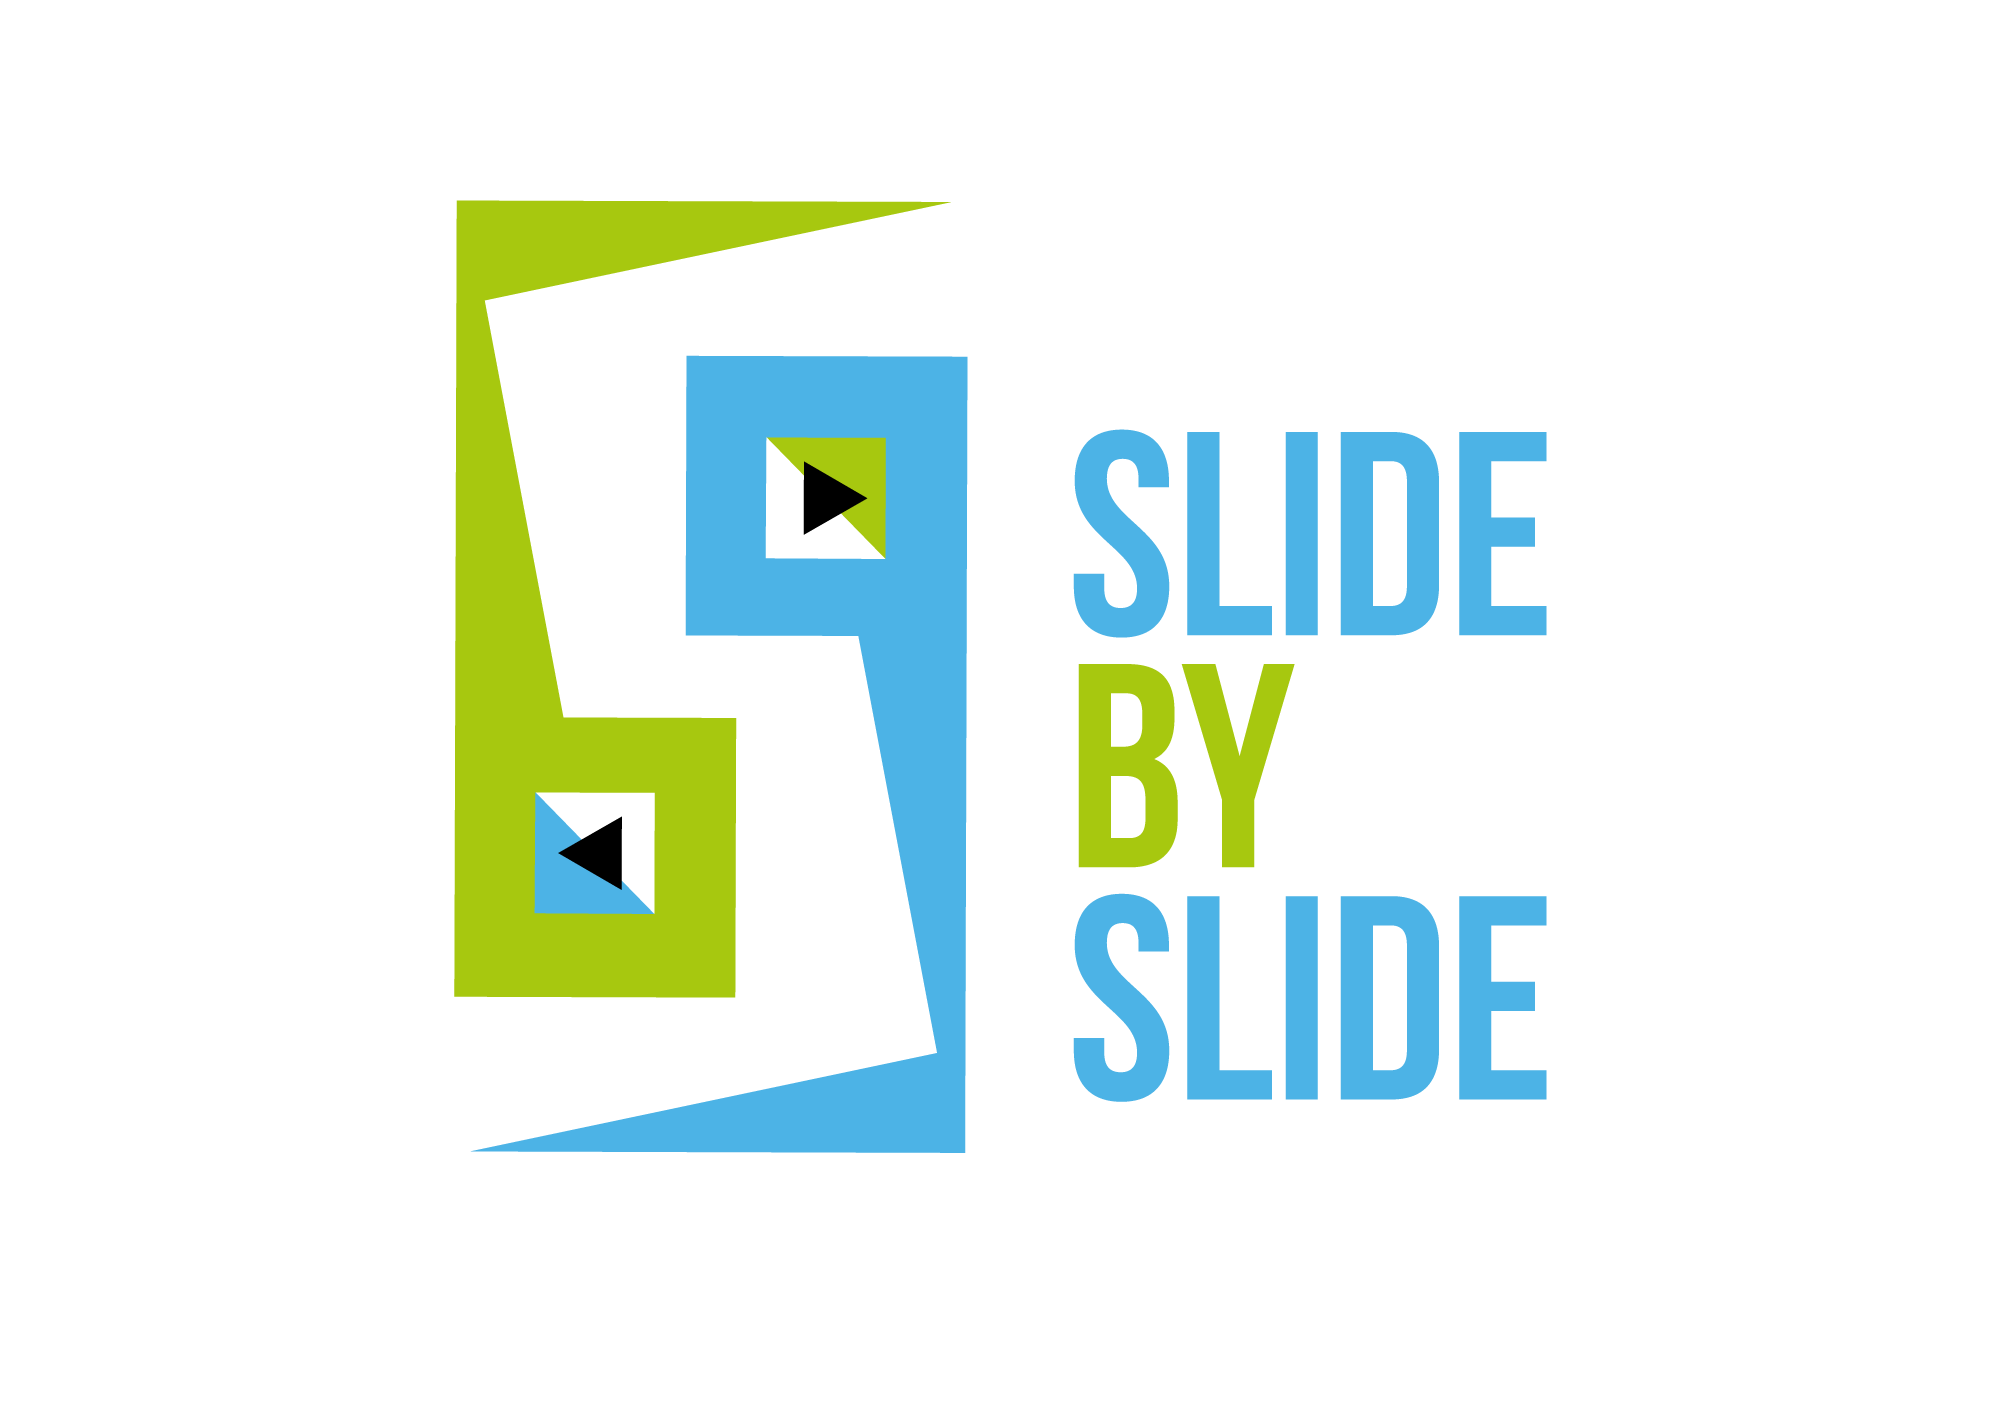 Slide by slide - una presentazione memorabile